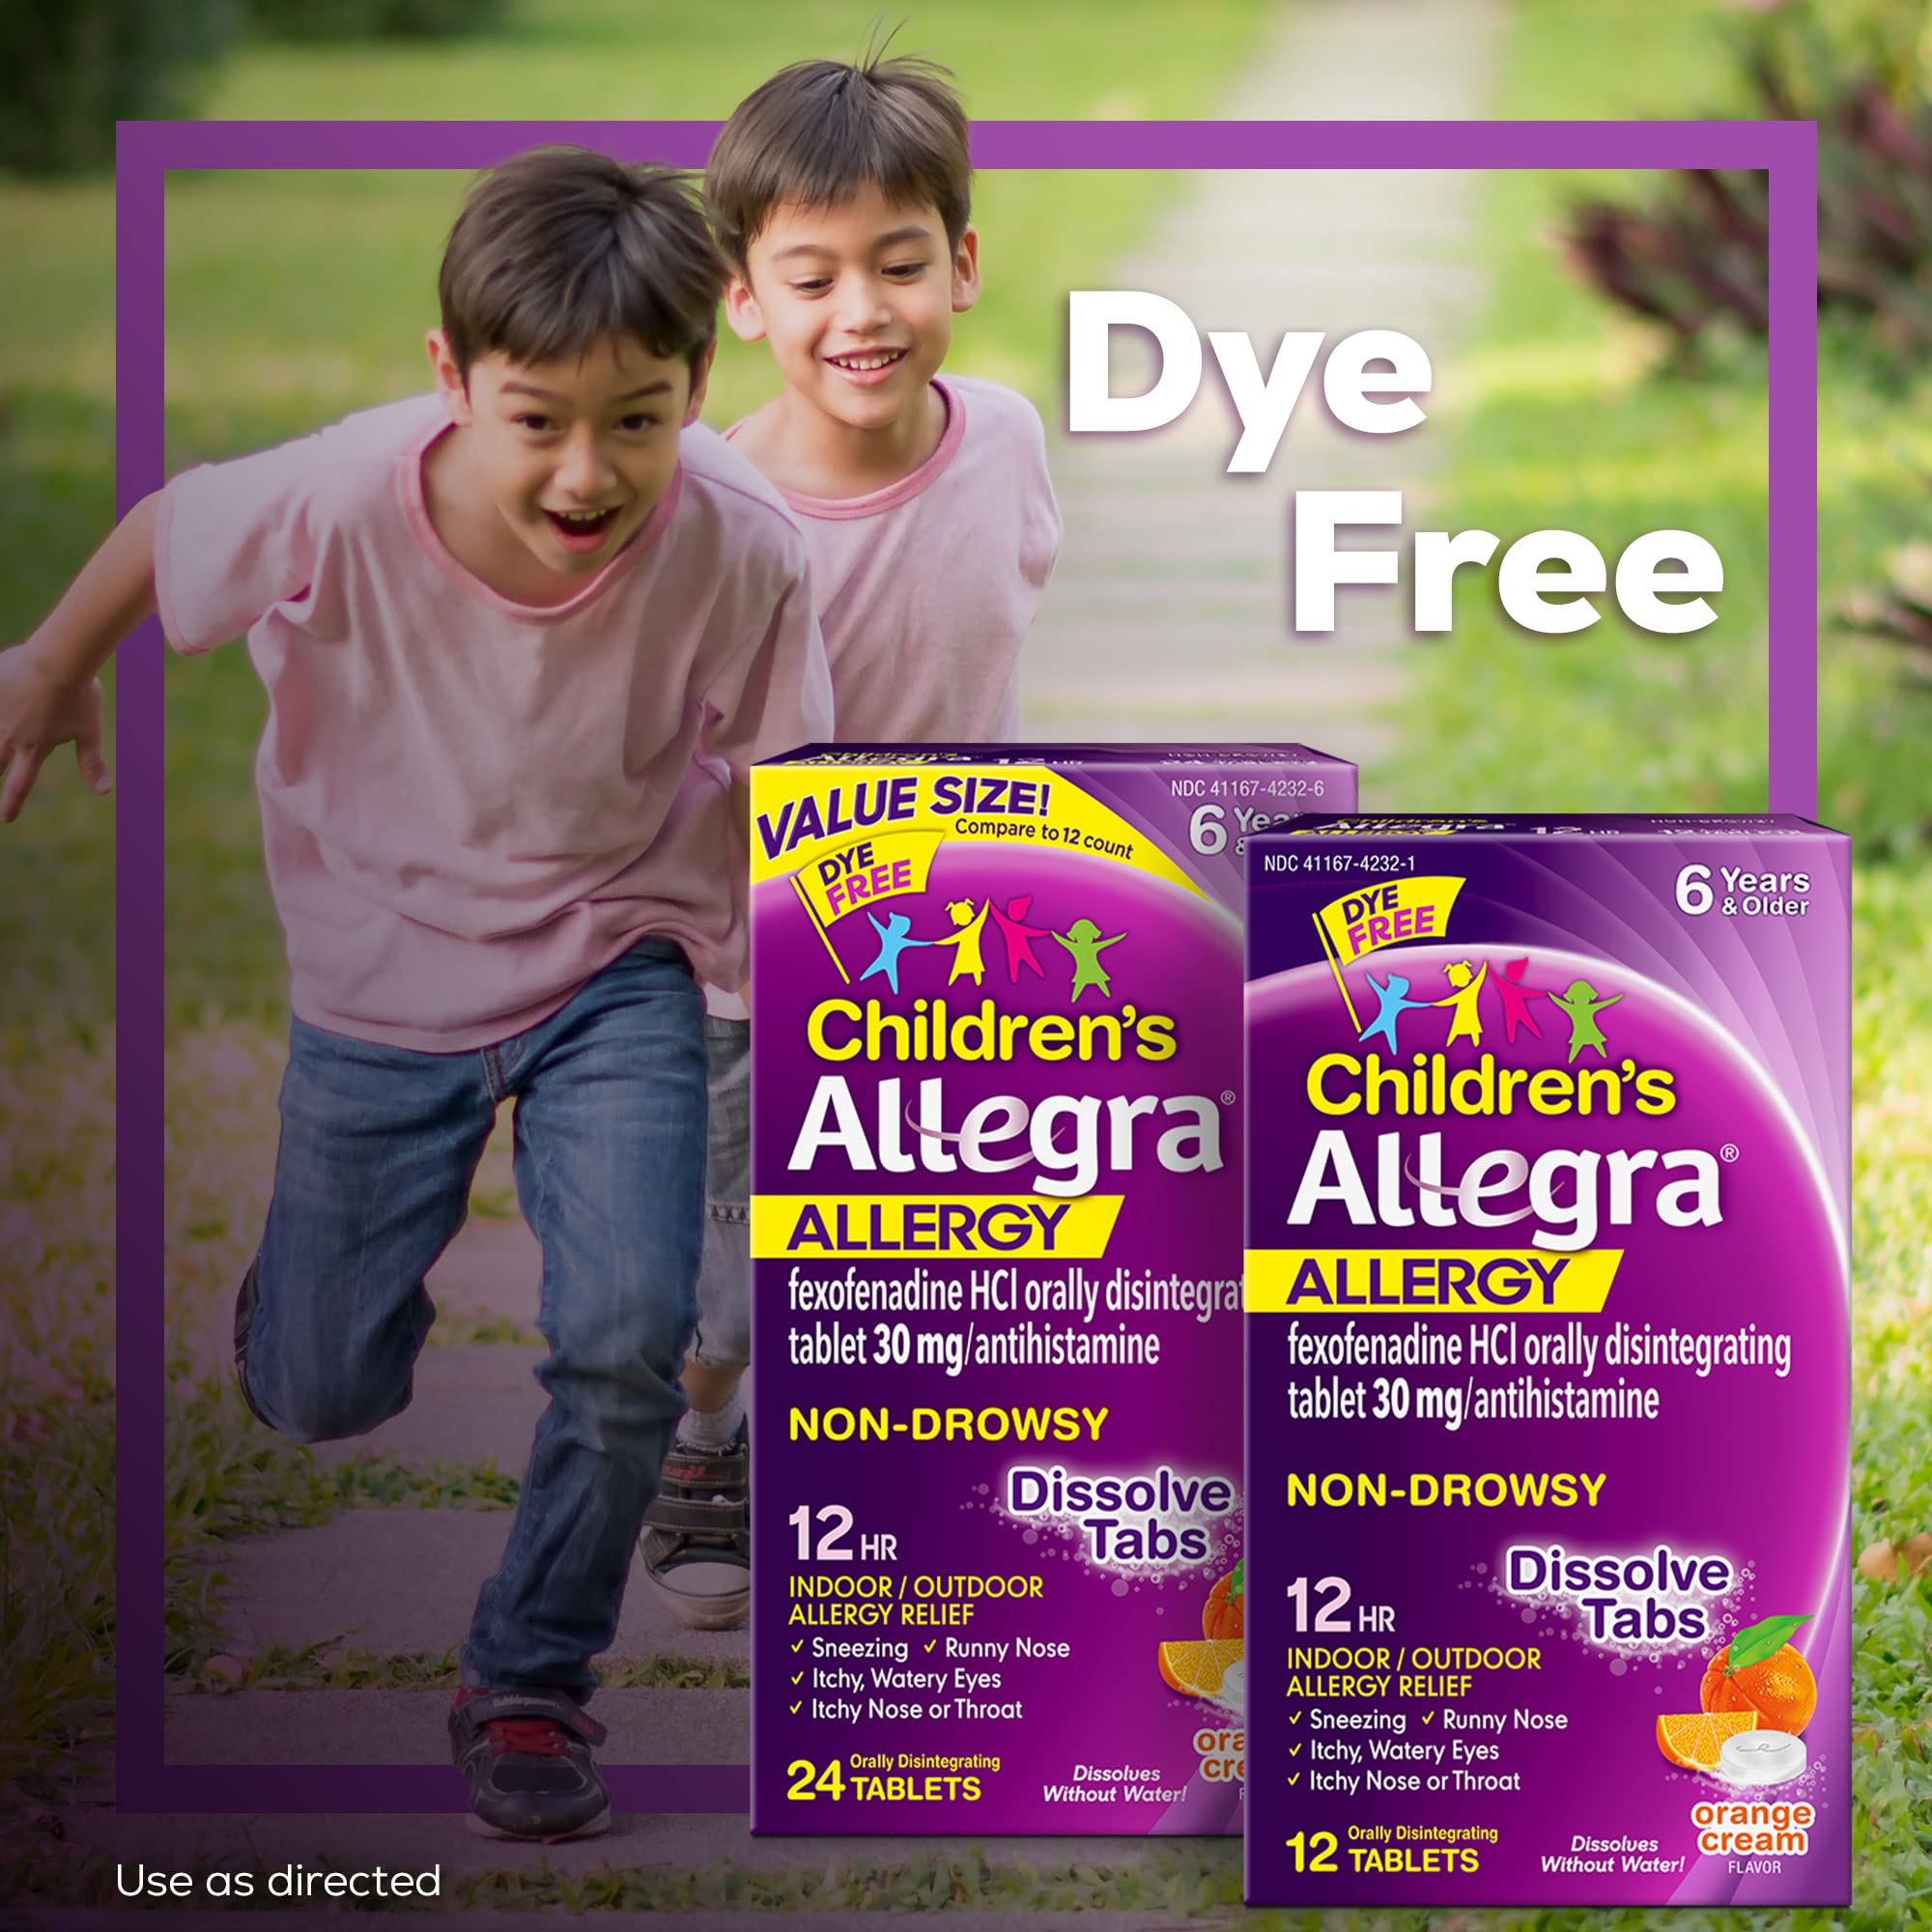 Allegra Children's 12HR Orange Cream Tablets, 12 Count, Non-Drowsy Antihistamine for Kids